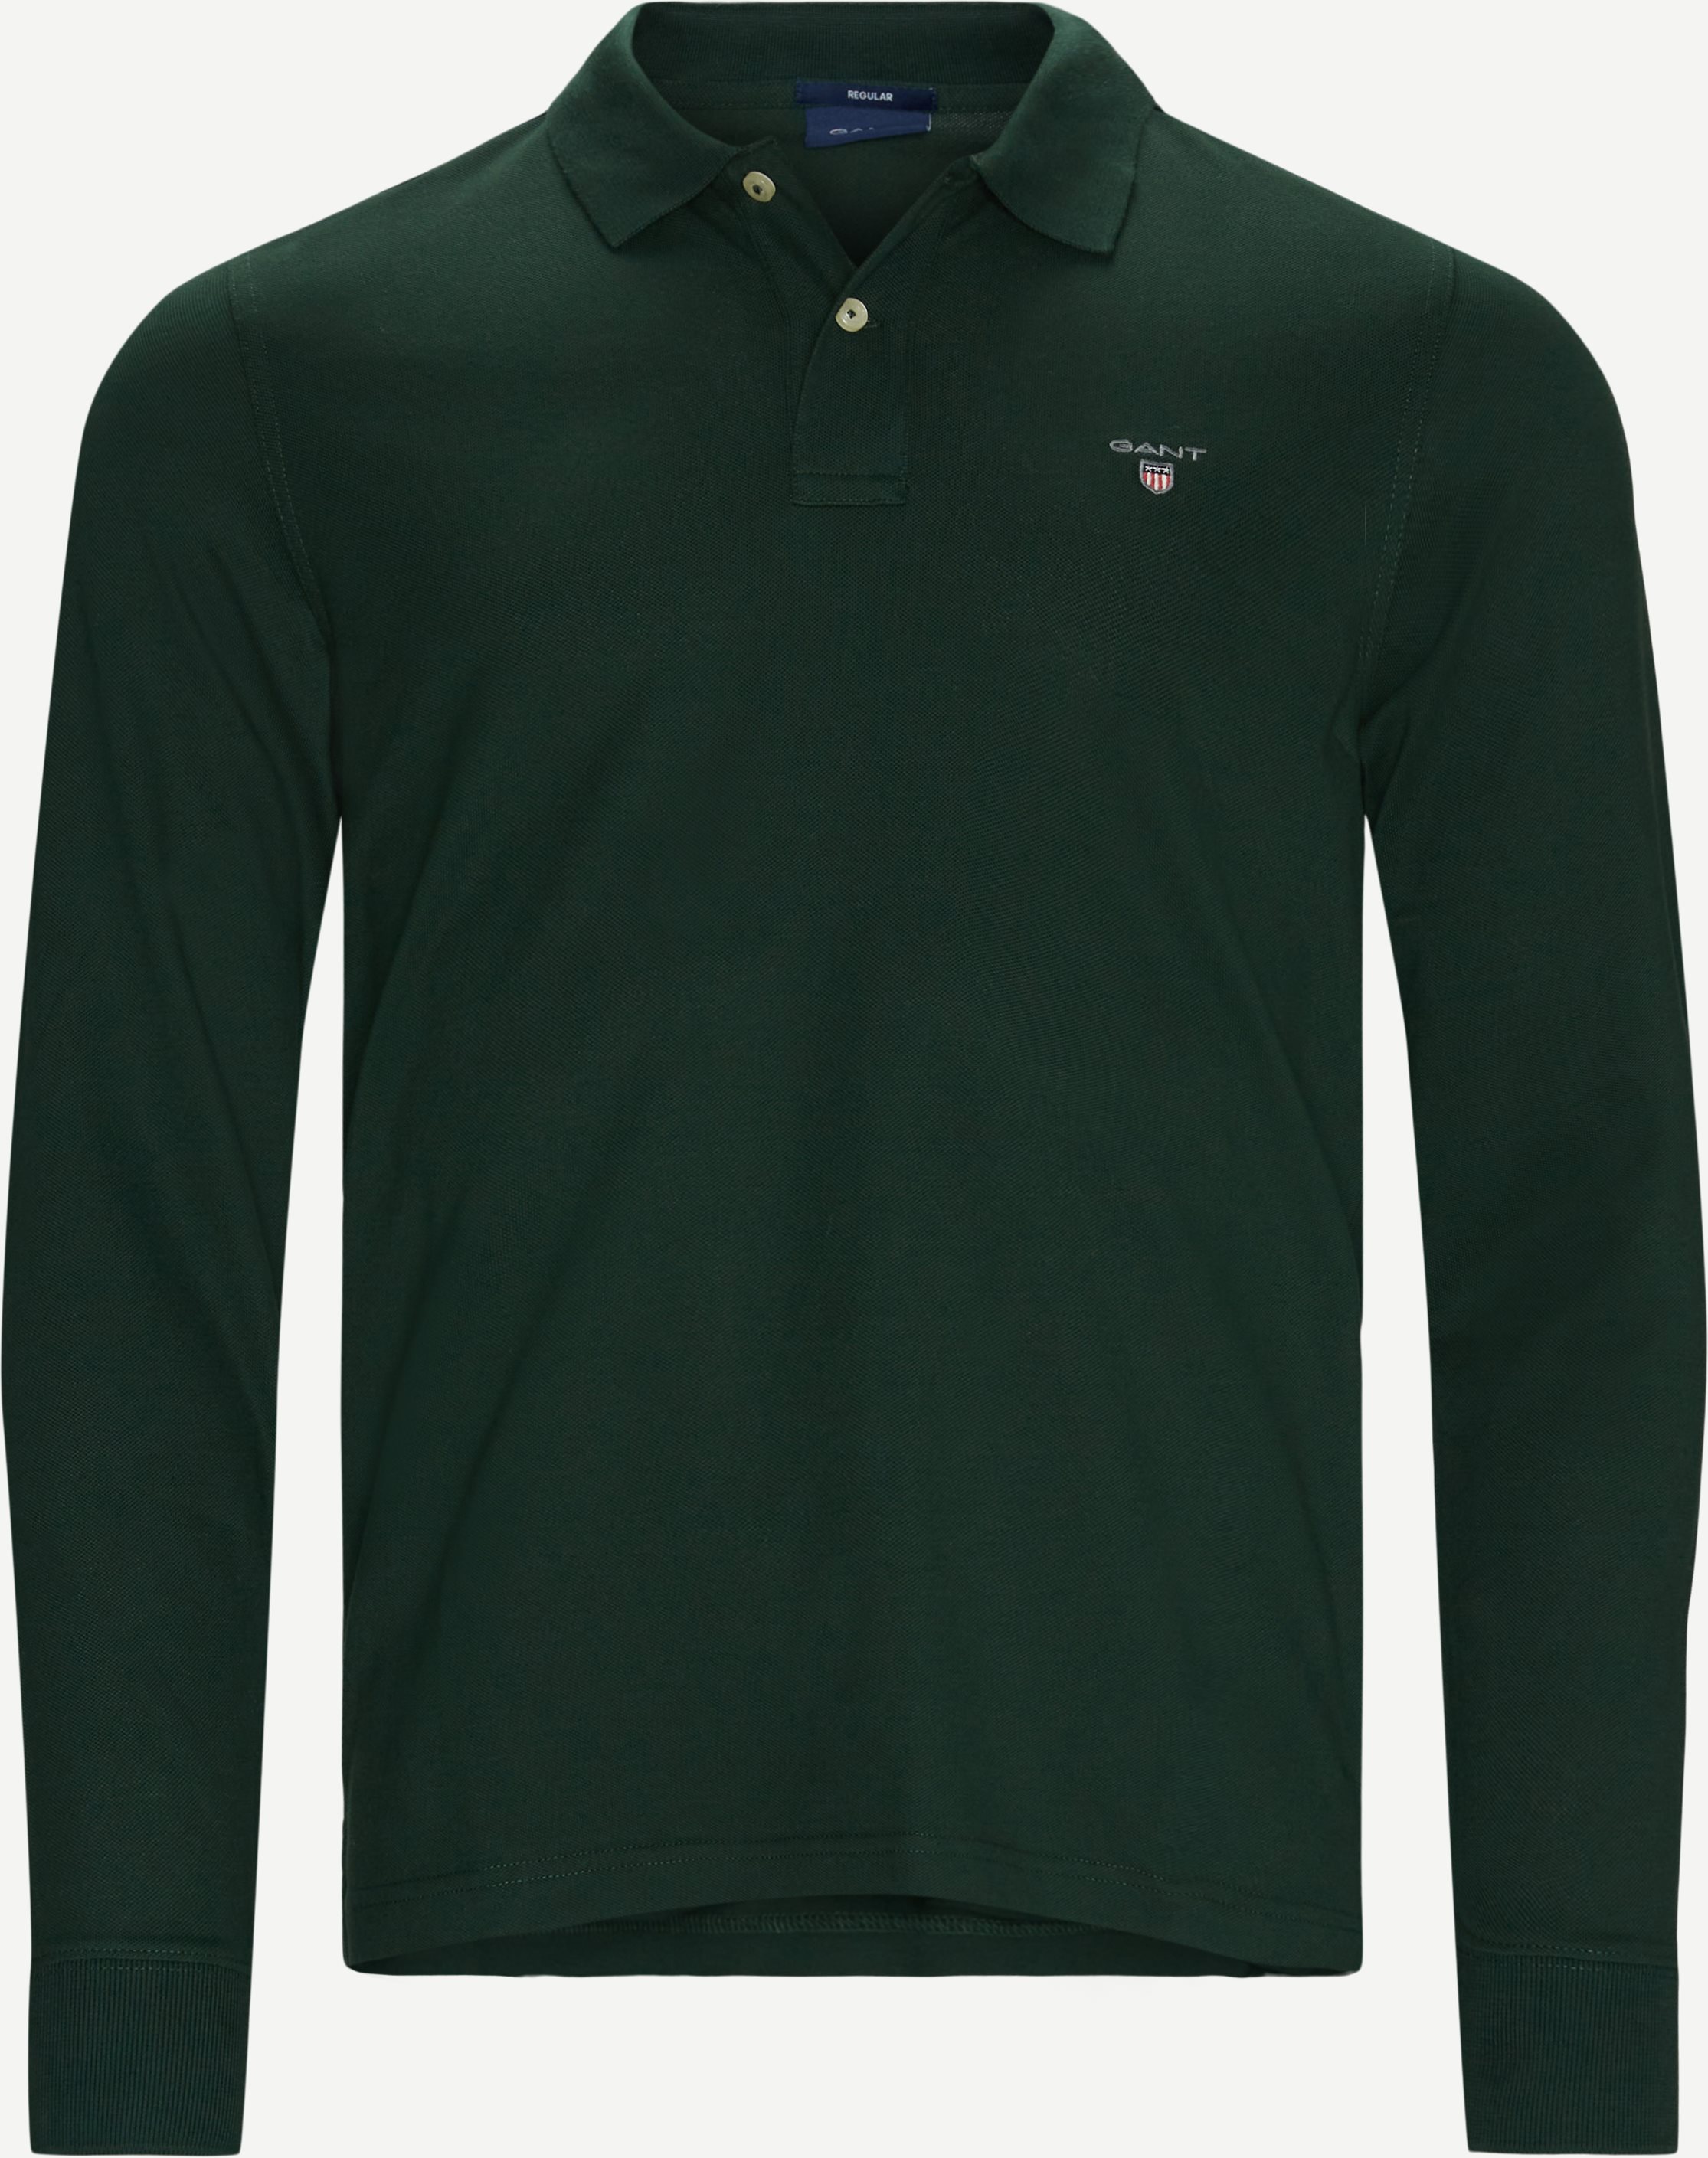 Orginal Pique långärmad Rugger - T-shirts - Regular fit - Grön